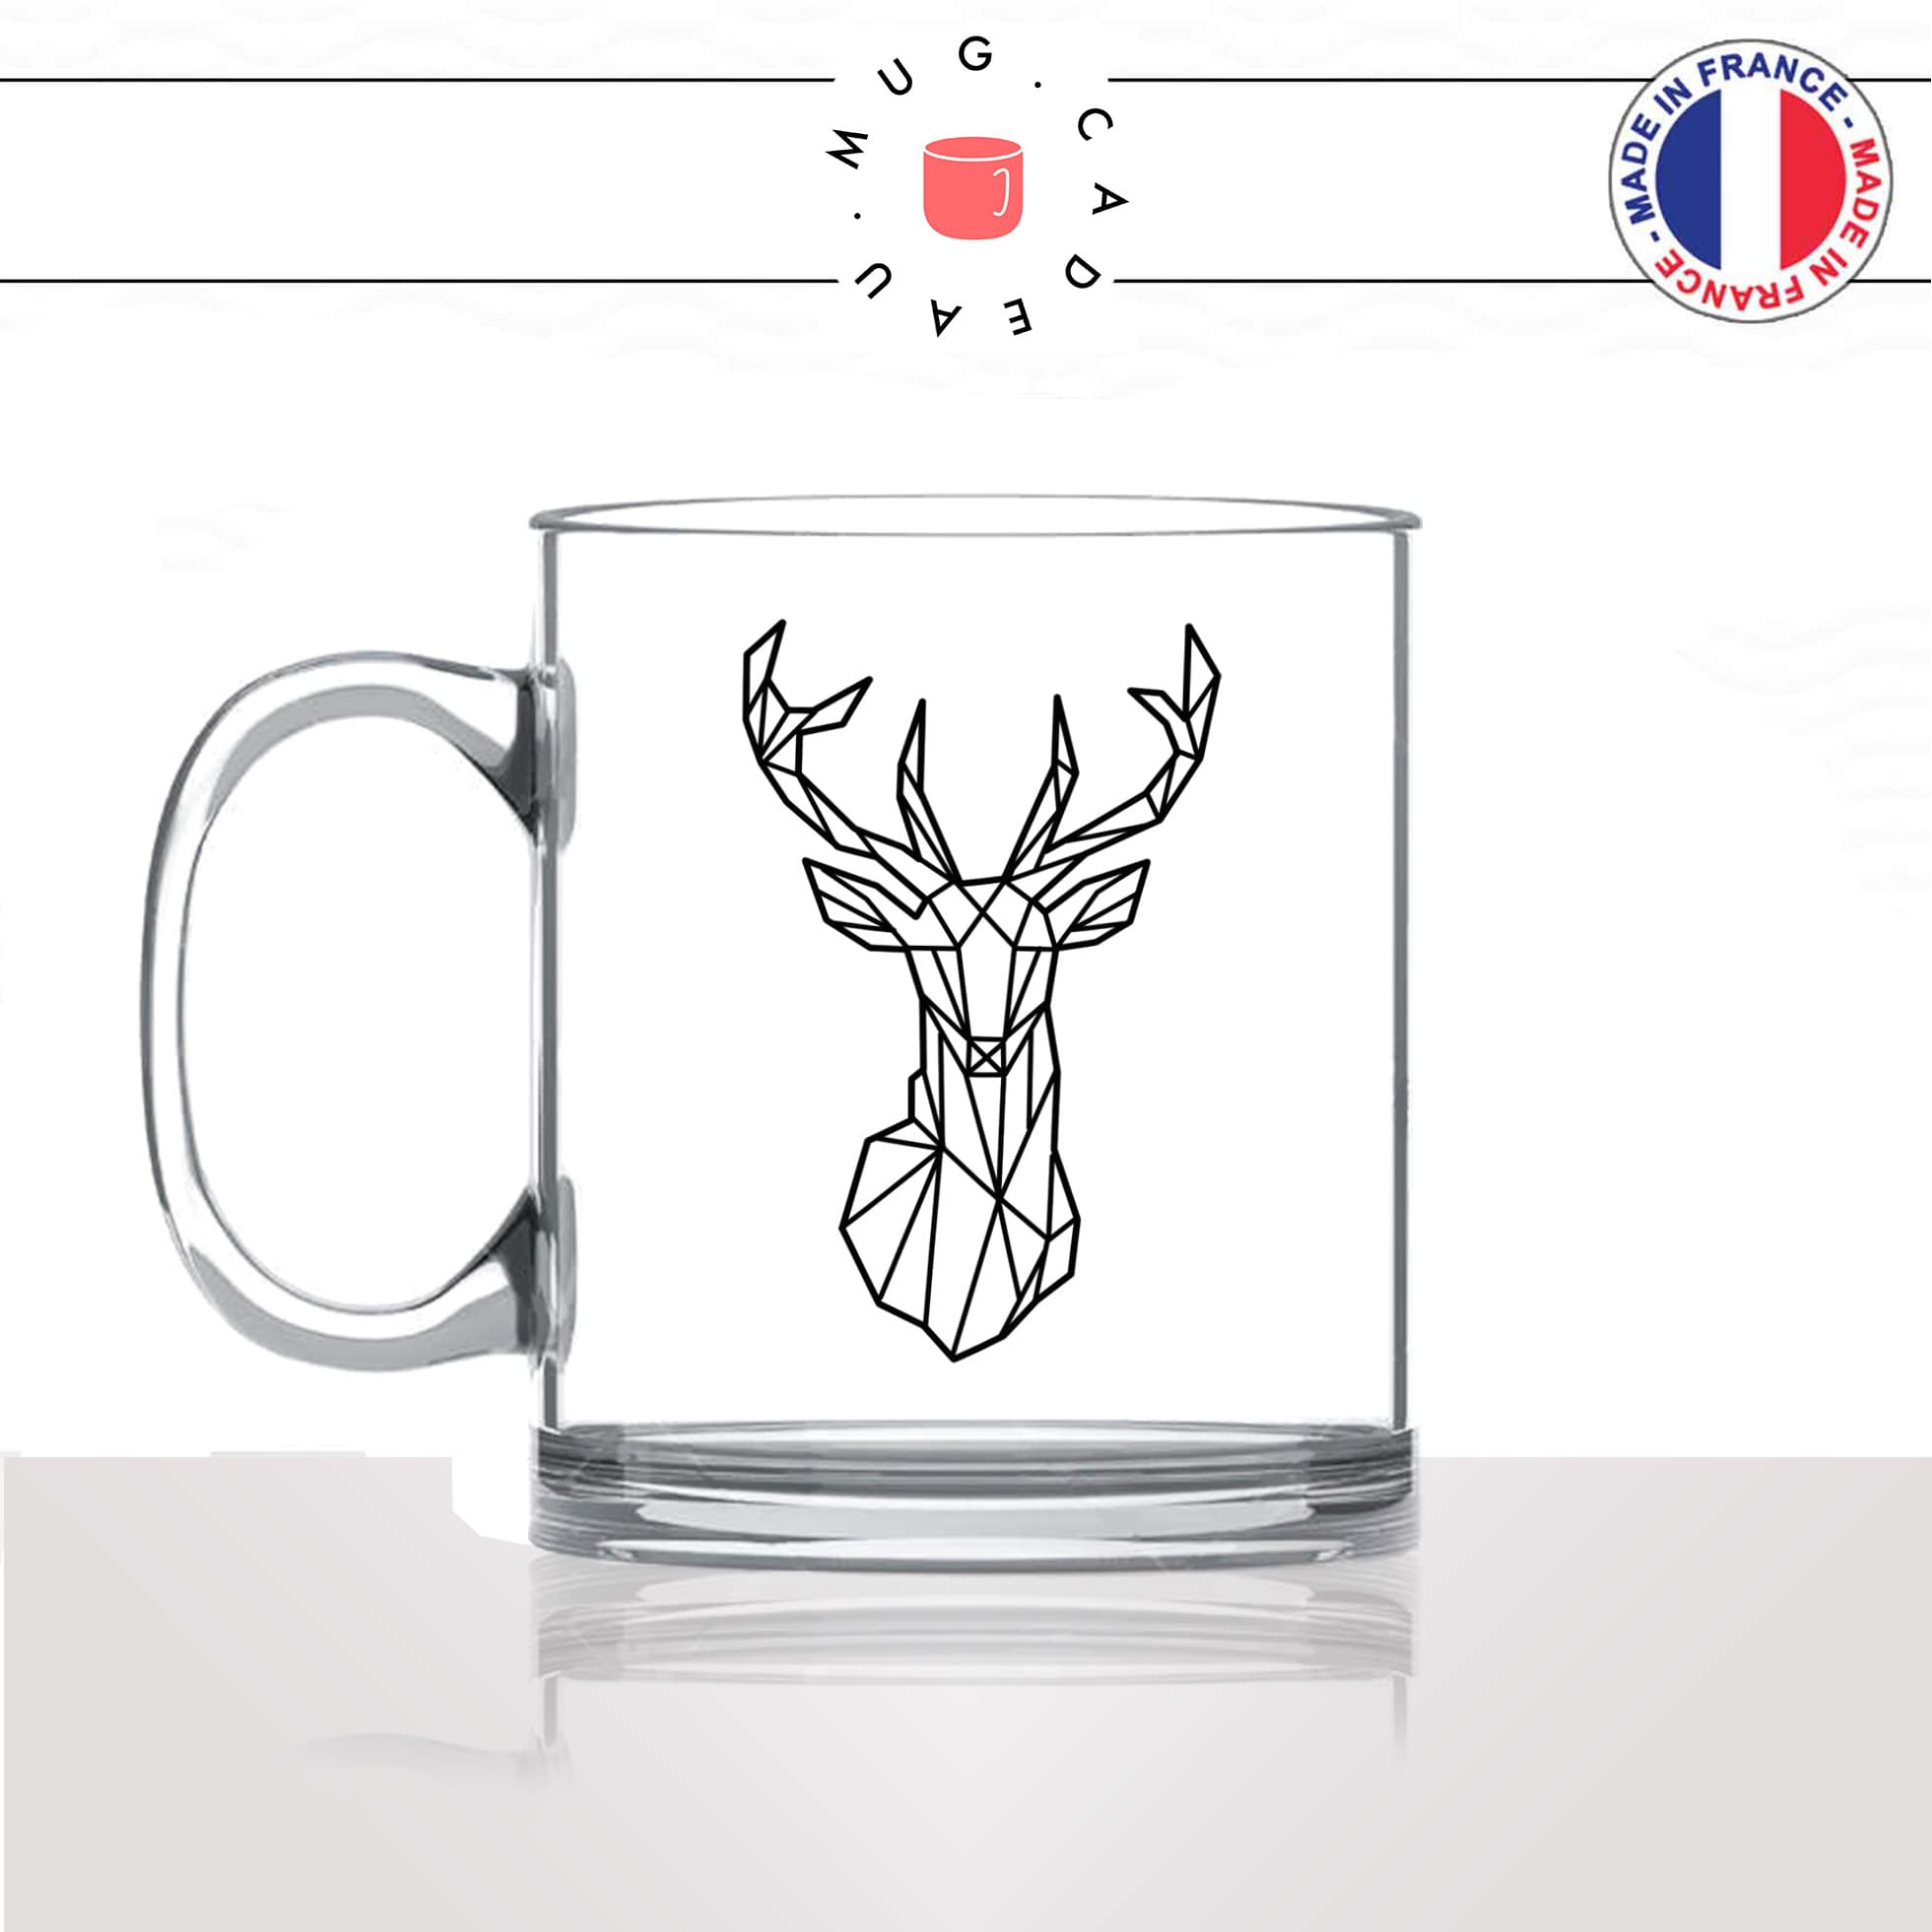 mug-tasse-en-verre-transparent-glass-animaux-déco-cerf-origami-animal-bois-biche-dessin-noir-fun-café-thé-idée-cadeau-original-personnalisable-min